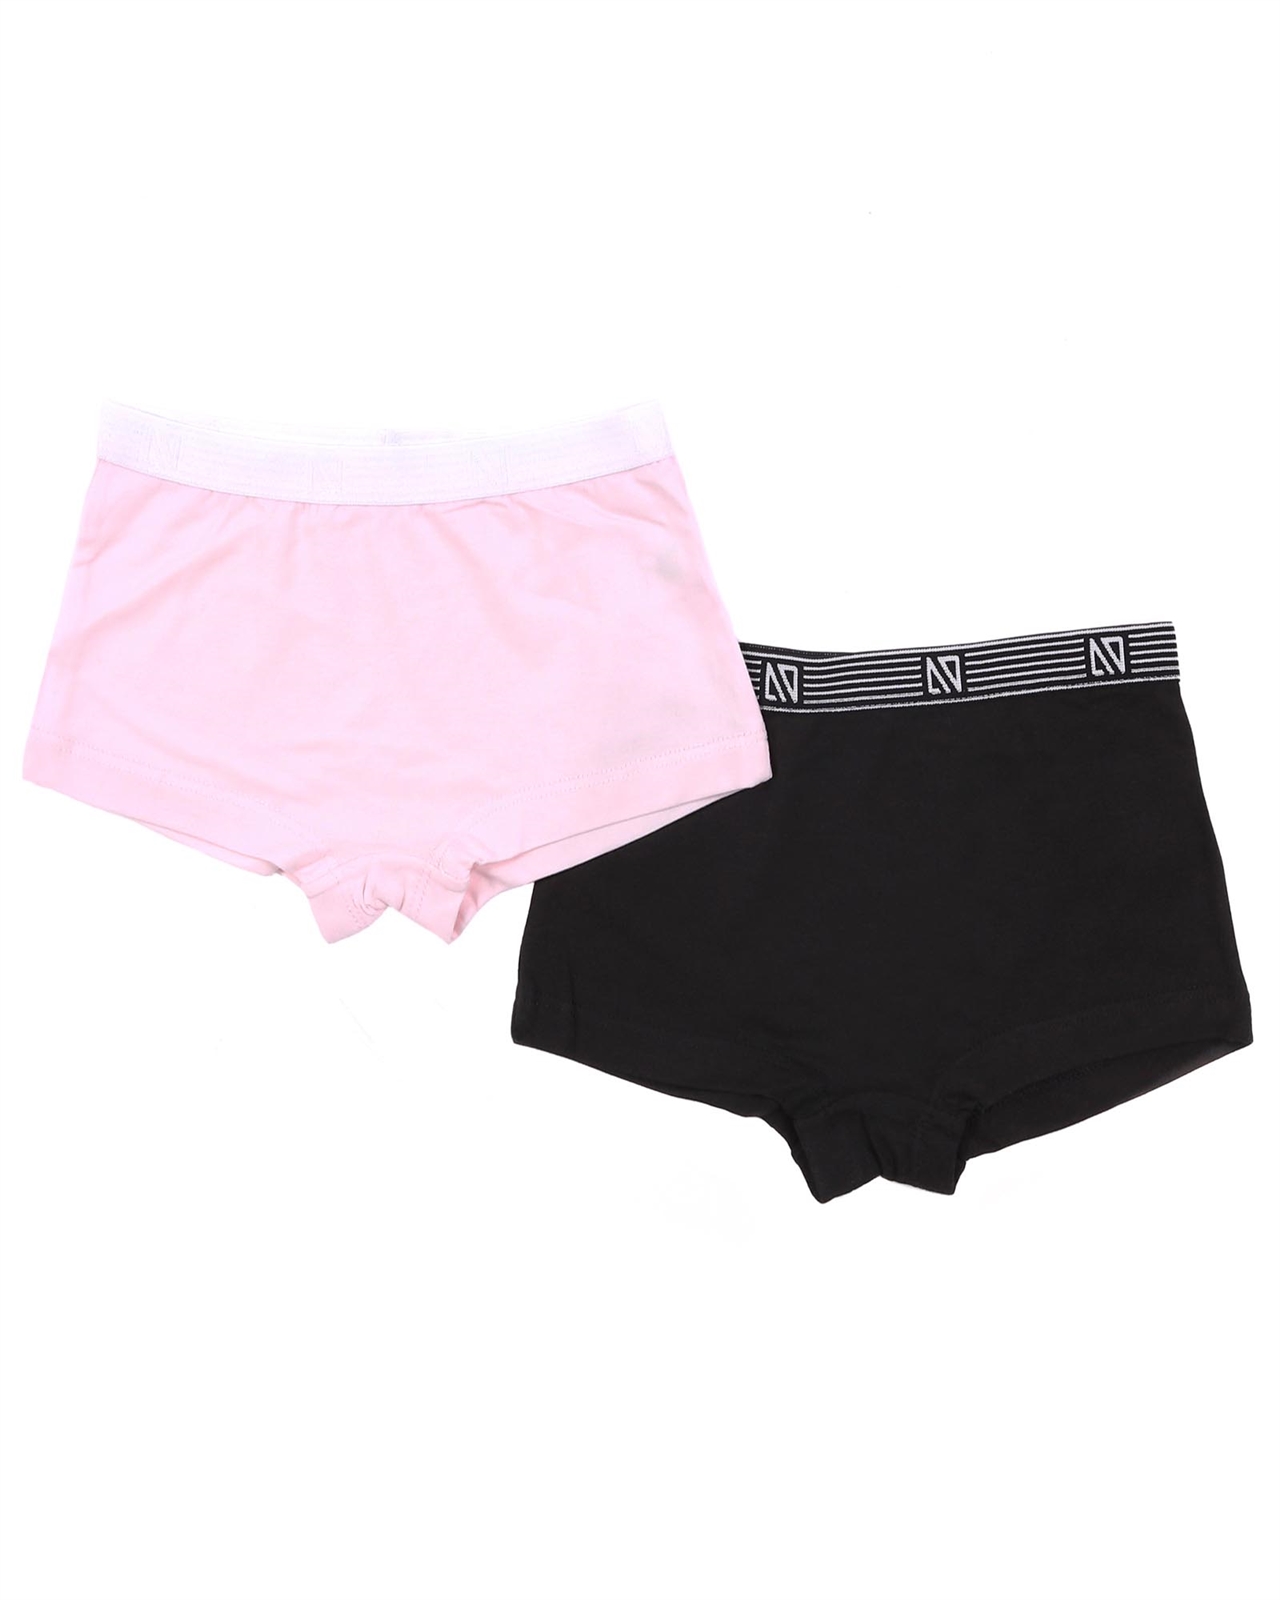 NANO Girls' Two-pack Panties in Pink/Black, Sizes 2-14